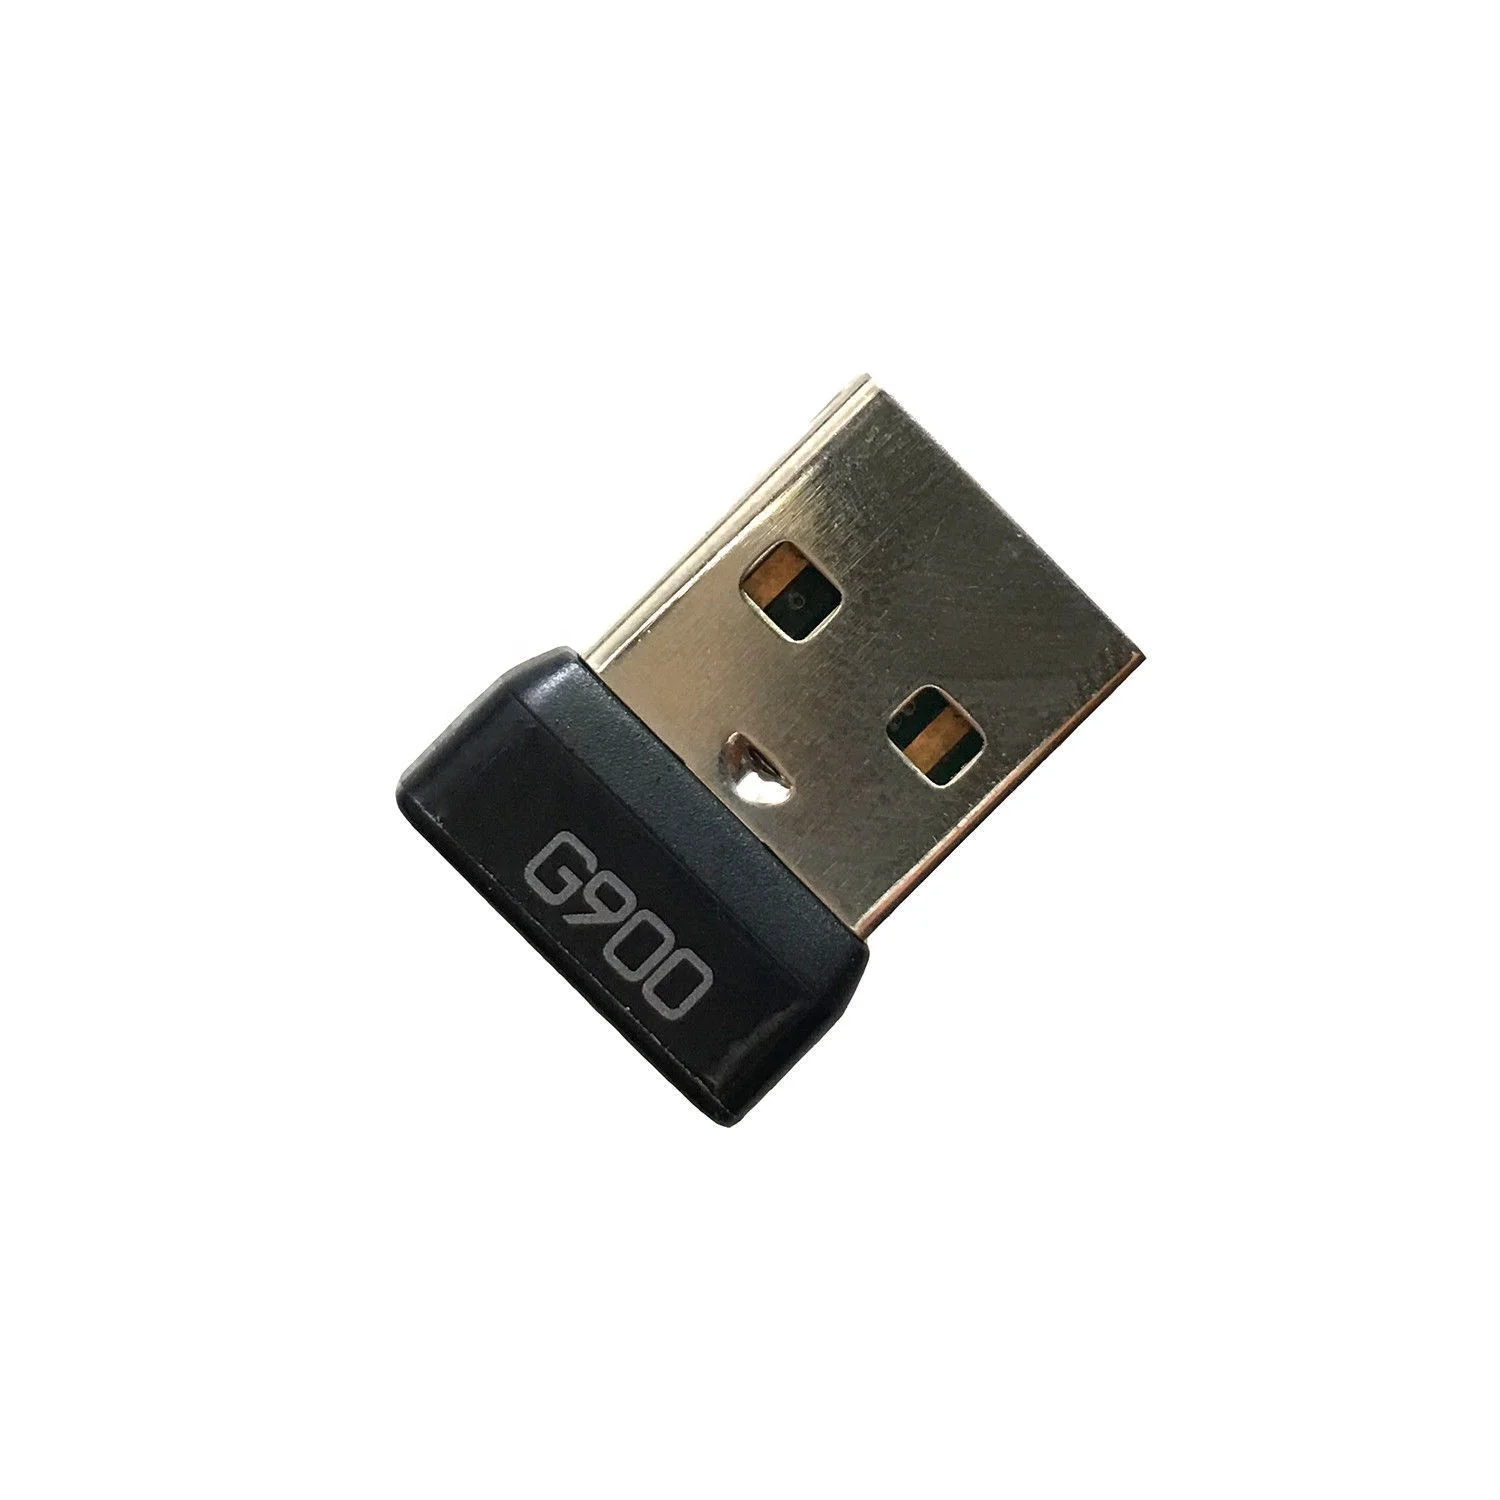 NUOVO Originale Logitech Ricevitore USB Nano Adattatore Wireless per G900 Gaming Mouse 